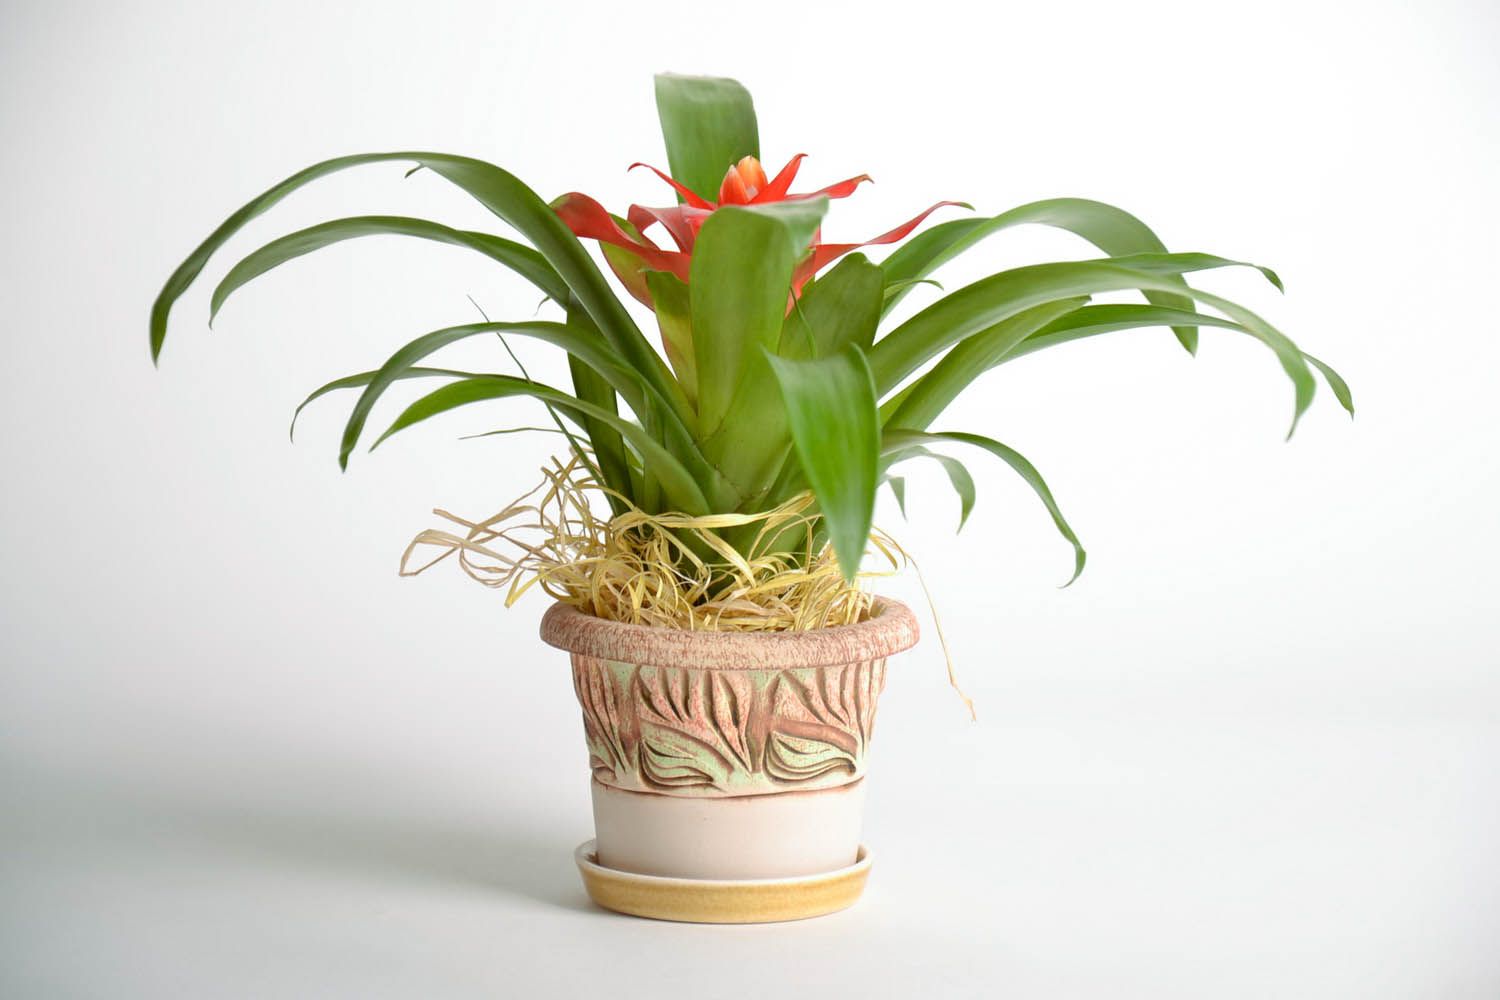 Керамический вазон для цветка Боровик фото 1